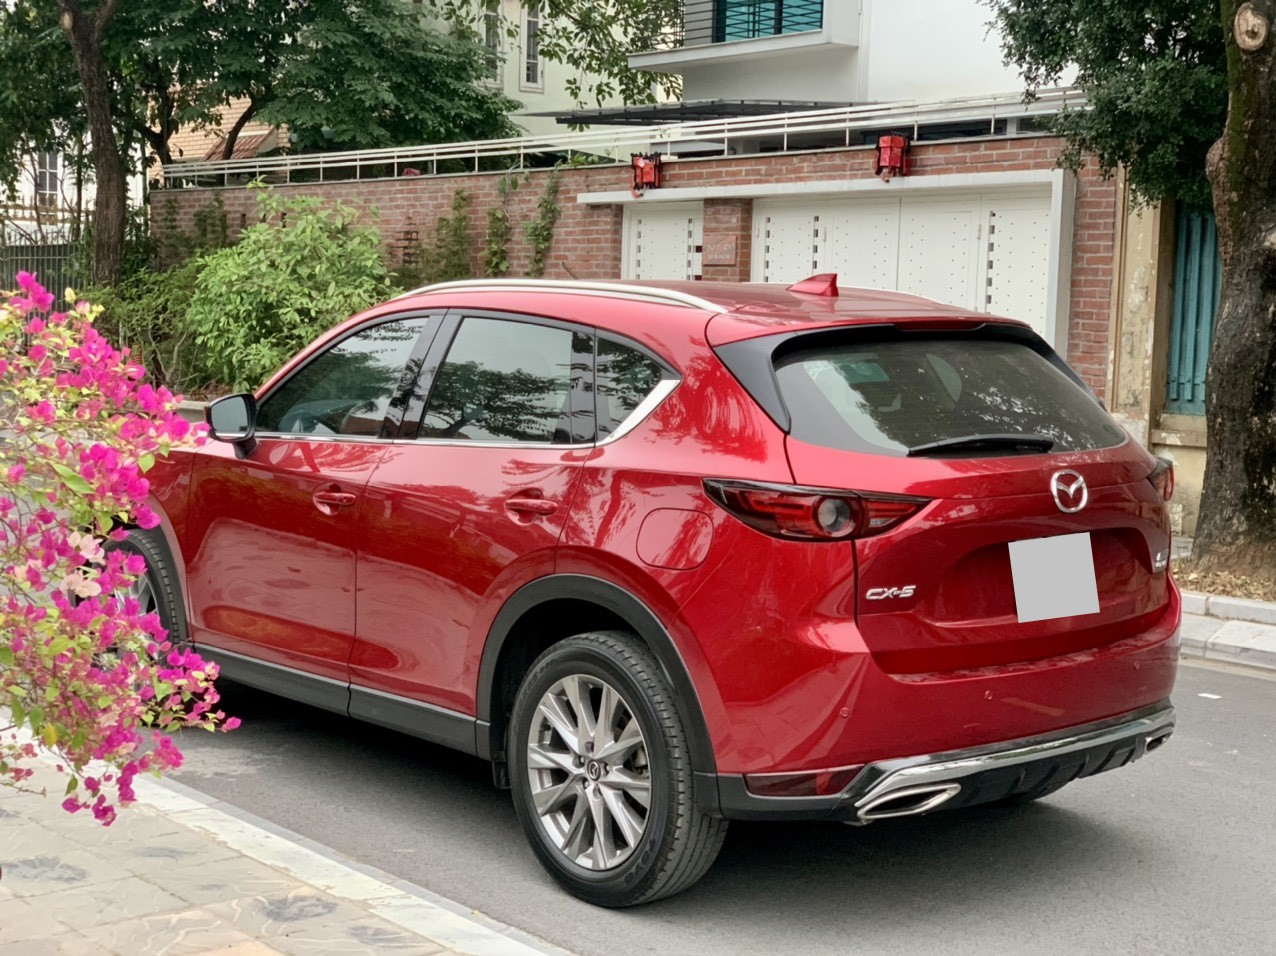 Mazda CX 5 AWD 25 Premium Màu đỏ ruby Tự động    Giá 945 triệu   0903463551  Xe Hơi Việt  Chợ Mua Bán Xe Ô Tô Xe Máy Xe Tải Xe Khách  Online